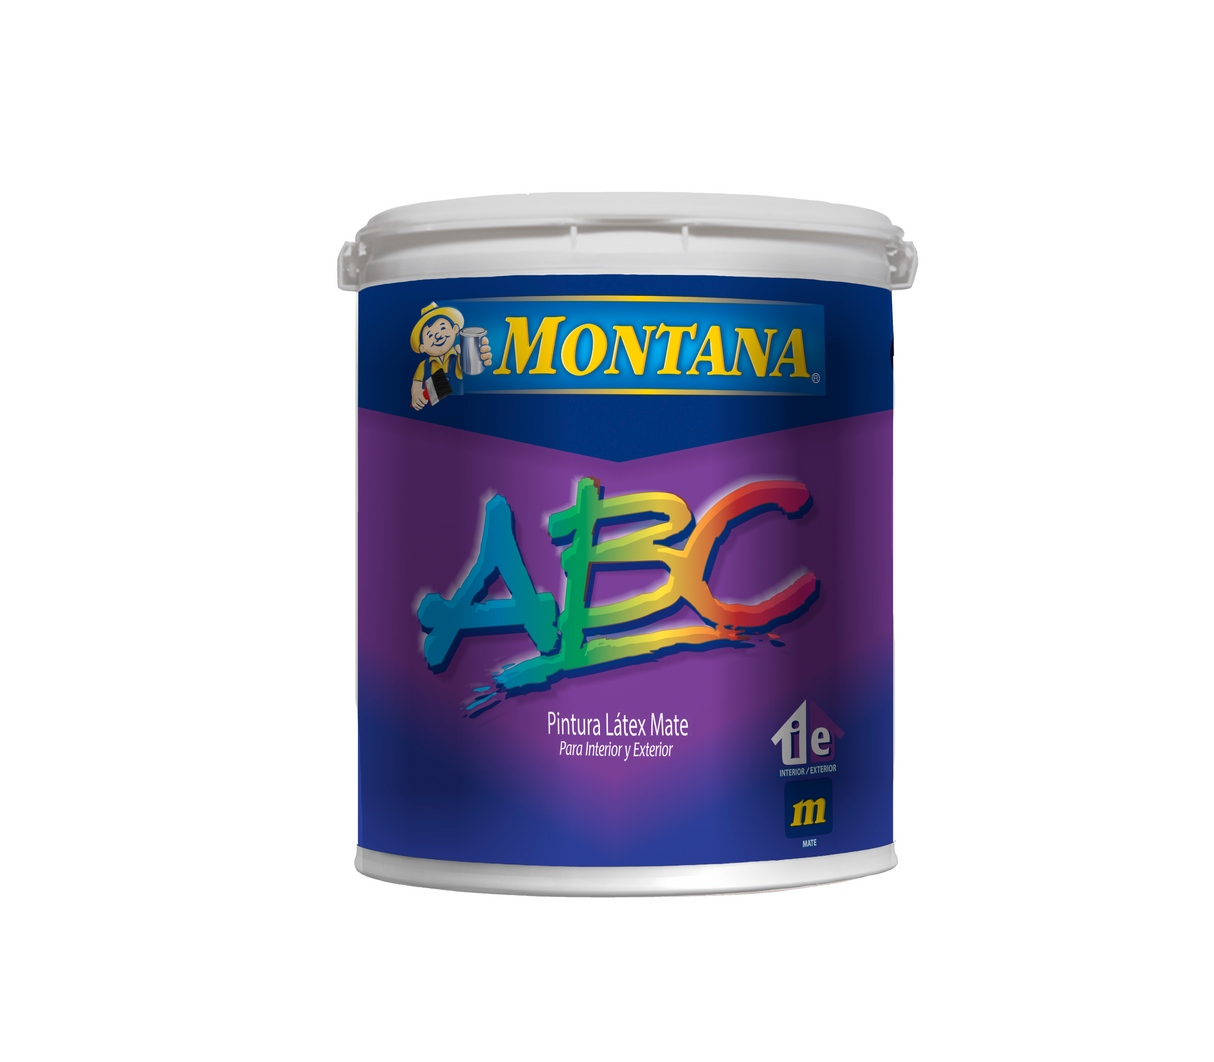 Pintura ABC emulsionada mate Interiores/Exteriores clase C Montana